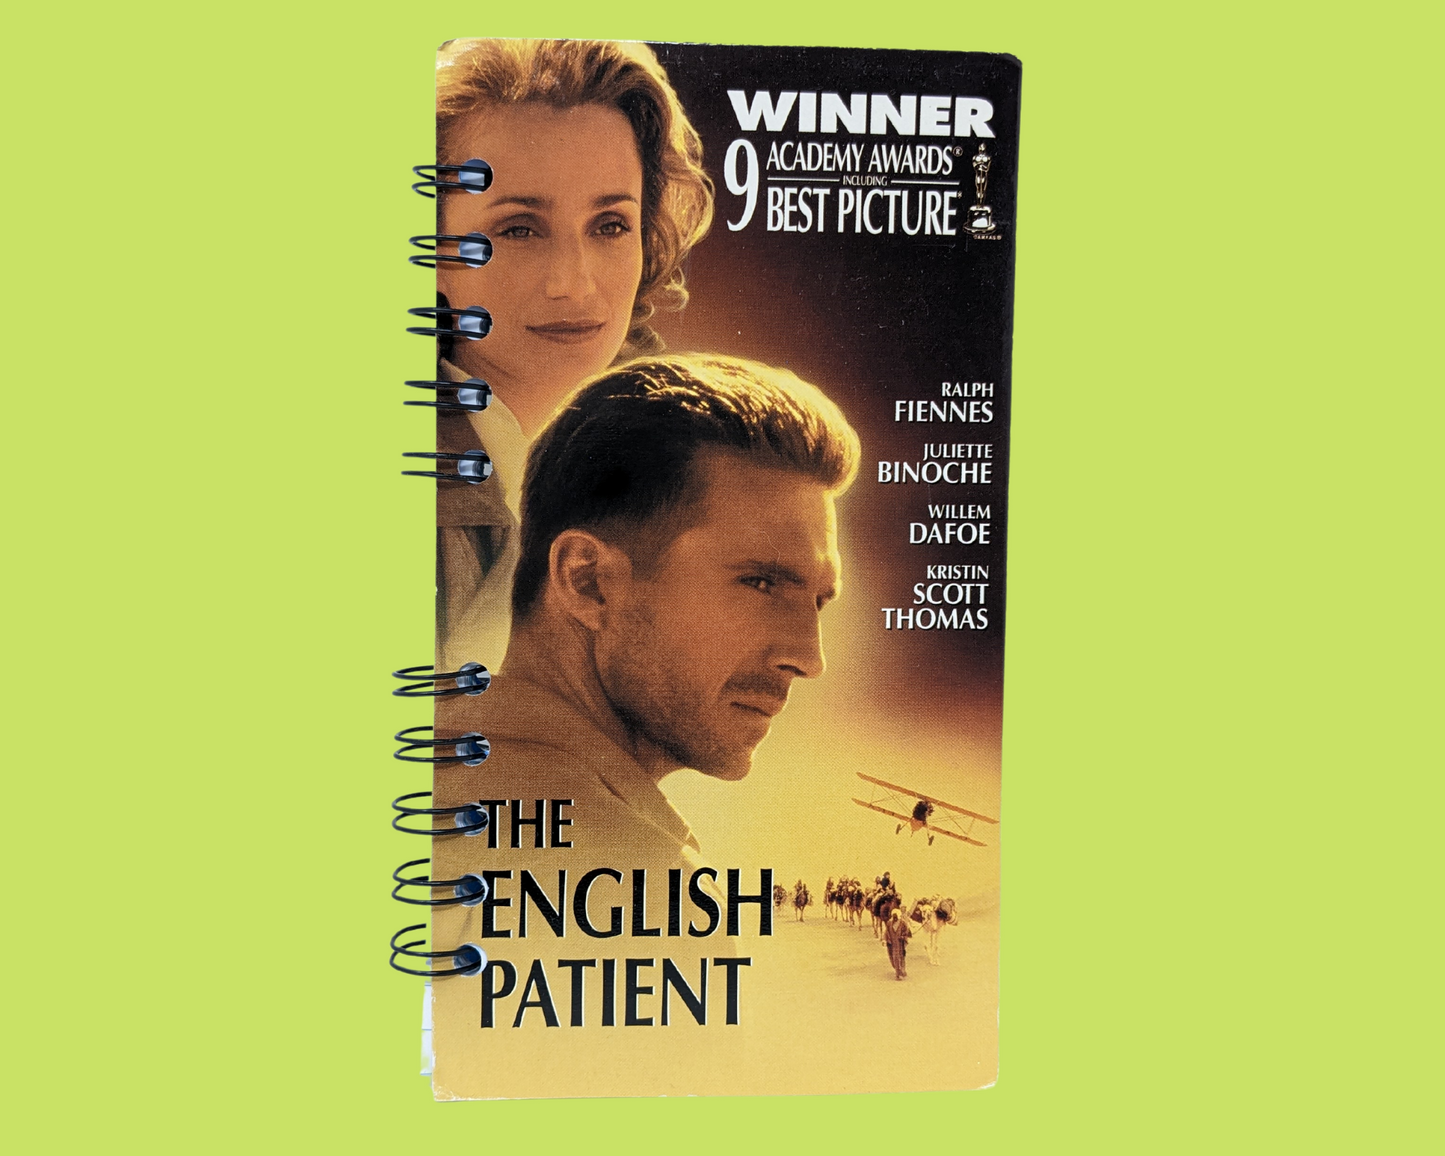 Le cahier de film VHS du patient anglais